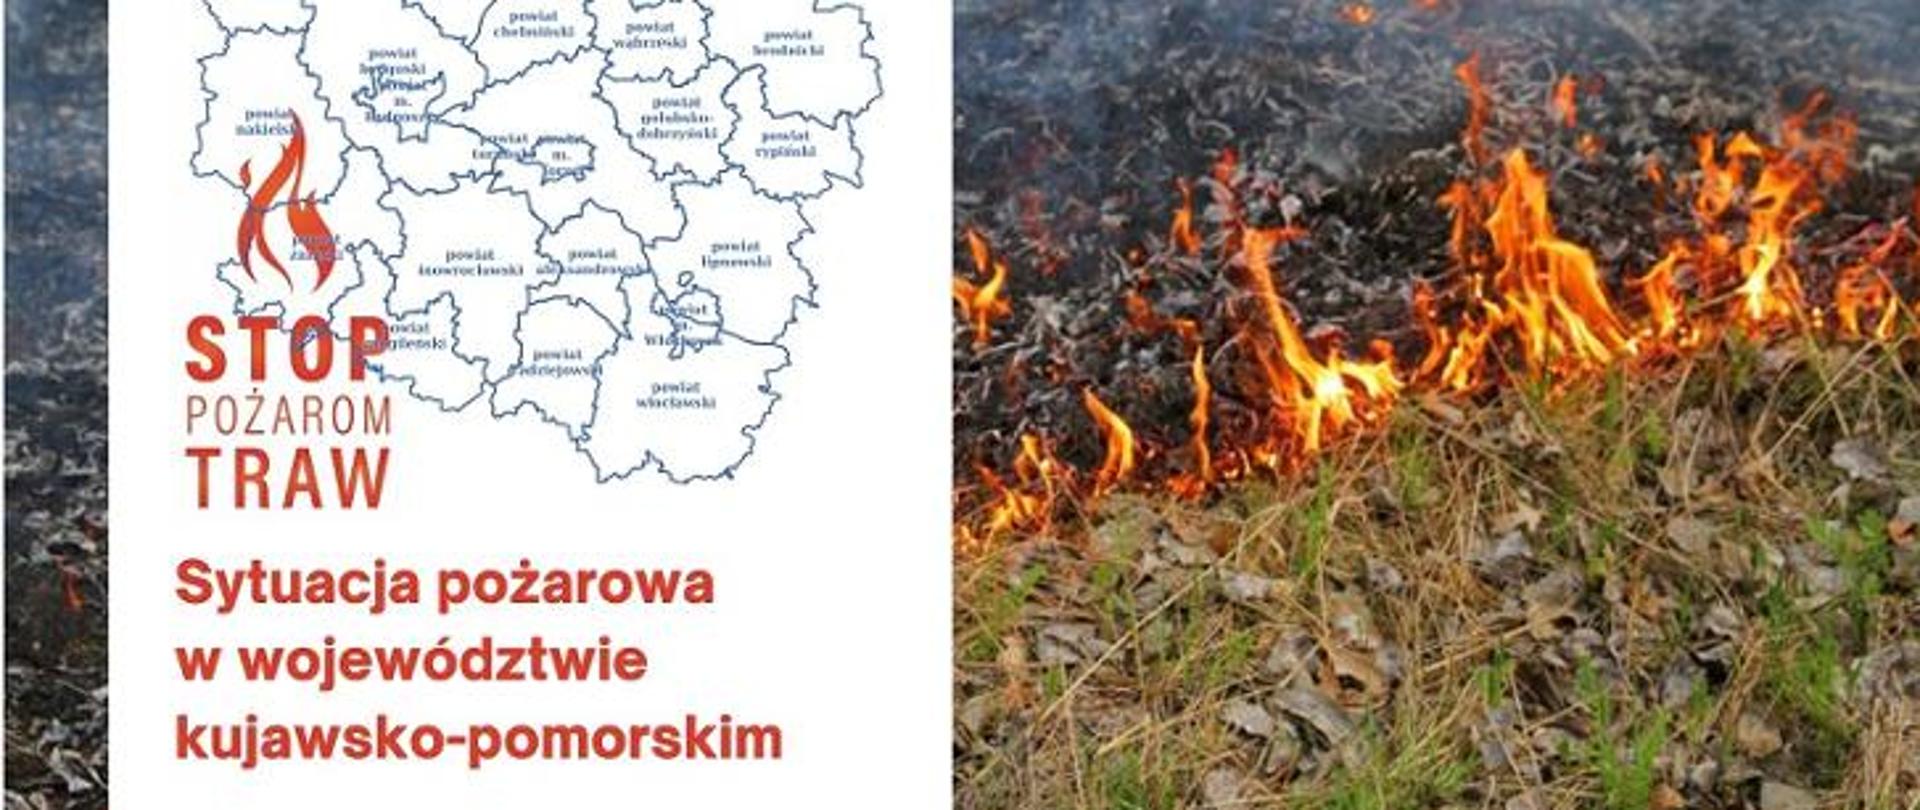 Na zdjęciu mapa województwa kujawsko-pomorskiego z tłem pożaru ściółki leśnej.